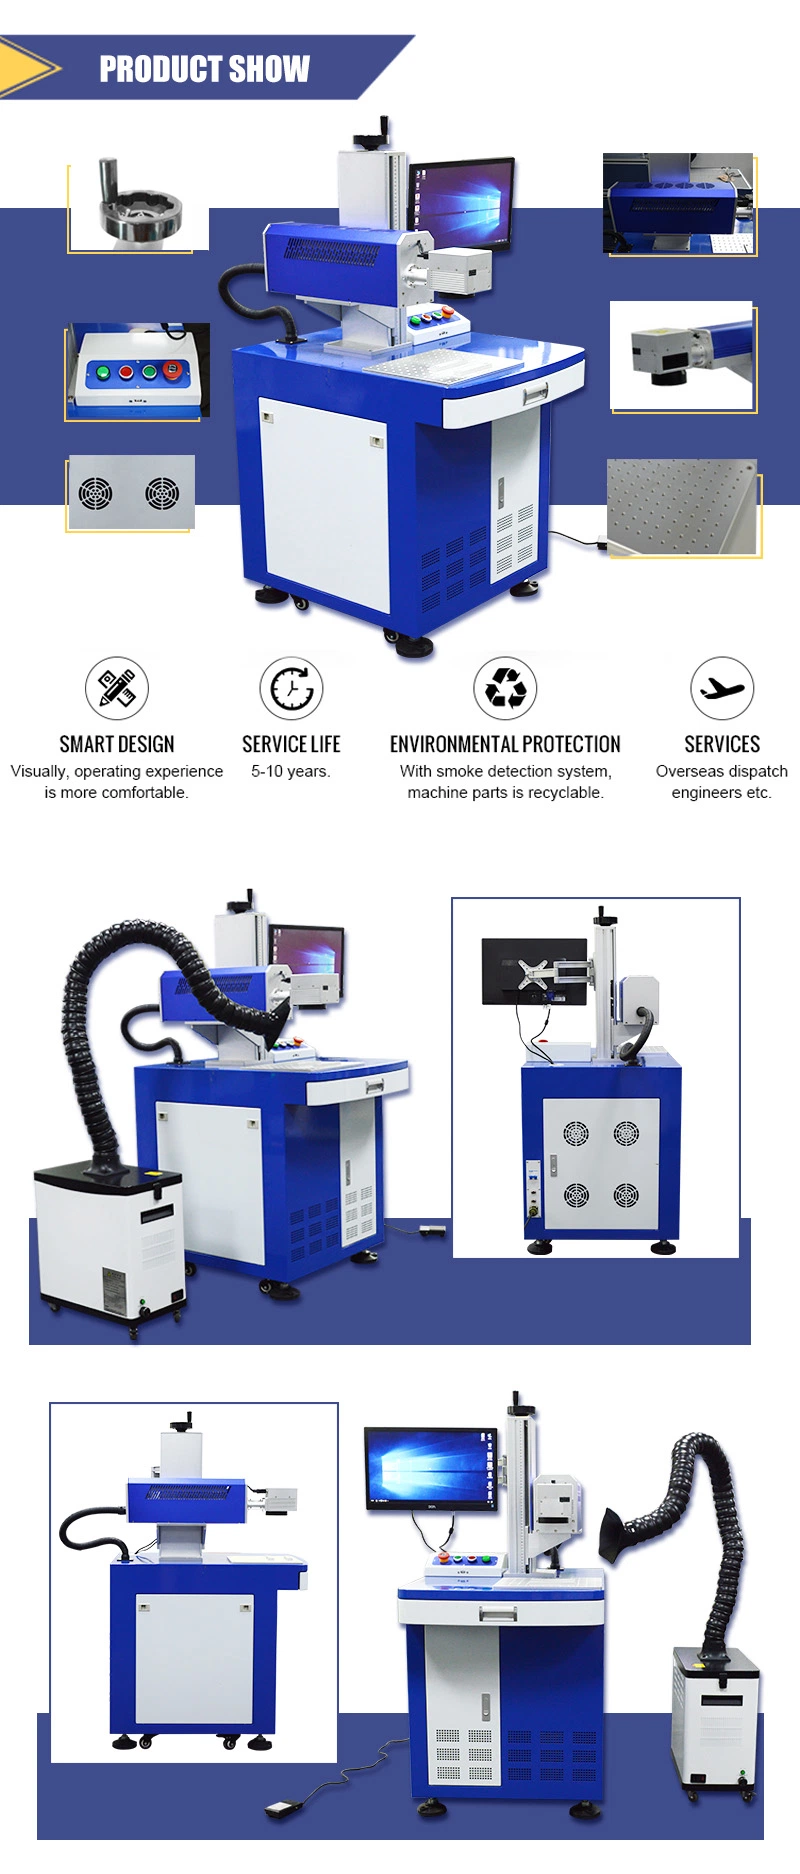 30W CO2 Laser Marking Machine Price ID Card Laser Engraving Printer